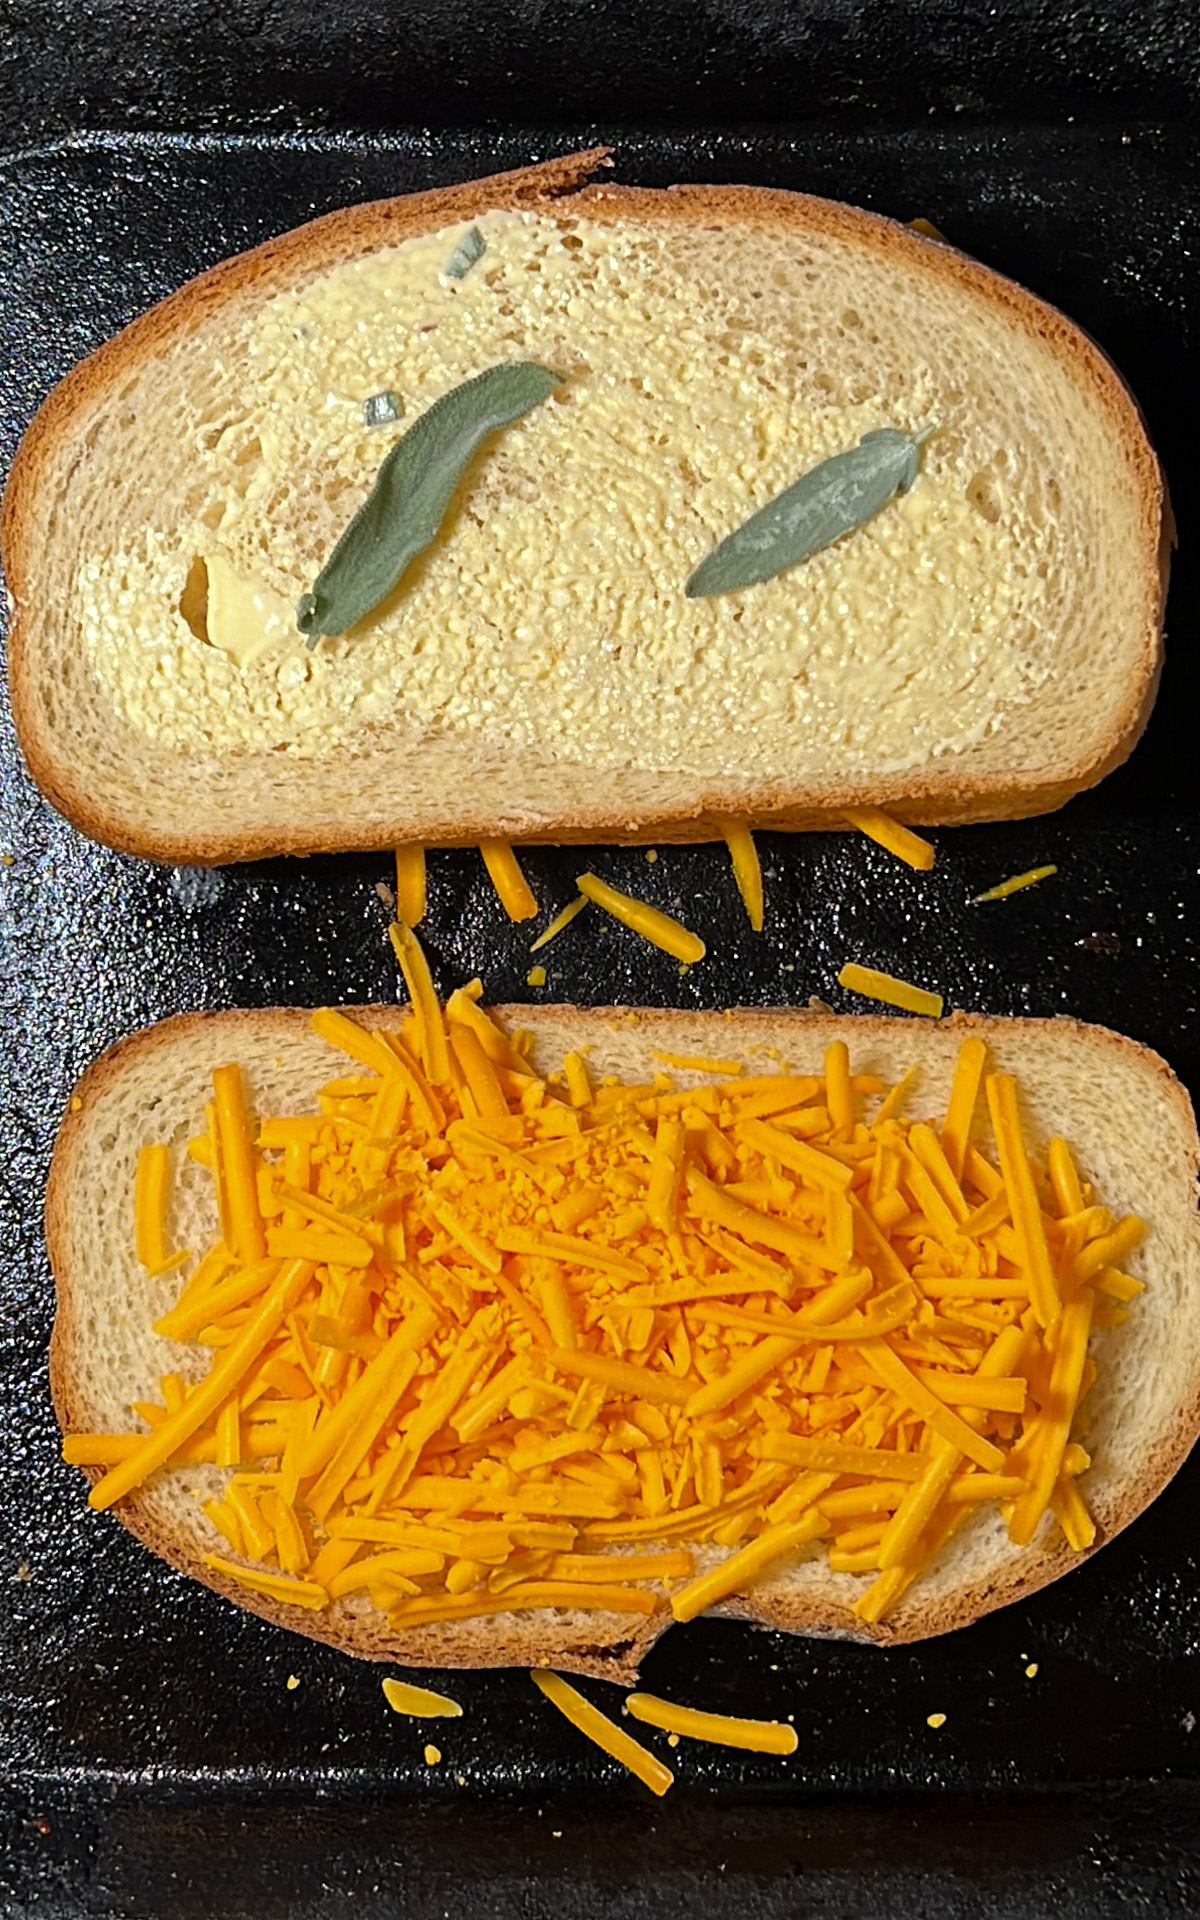 Dos rebanadas de pan en una sartén, una cubierta con mantequilla y hojas de salvia y la otra con queso cheddar rallado, servidas junto con sopa de calabaza.